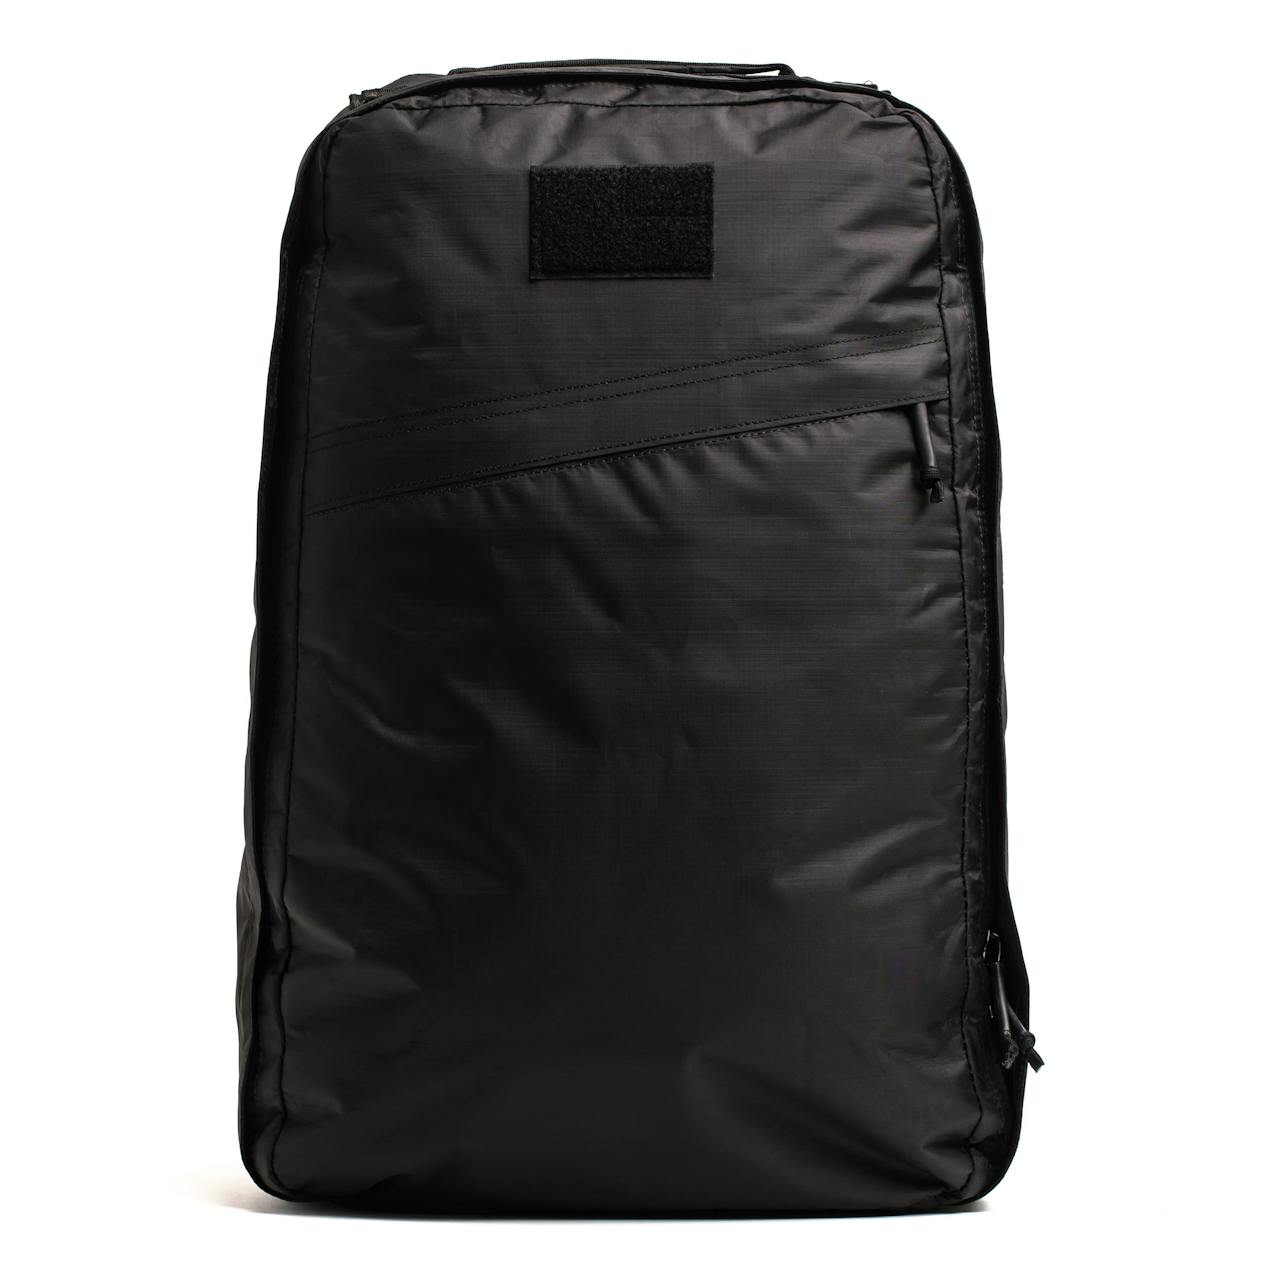 GORUCK GR1 Dyneema Backpack - 26L - Black Dyneema, Backpacks